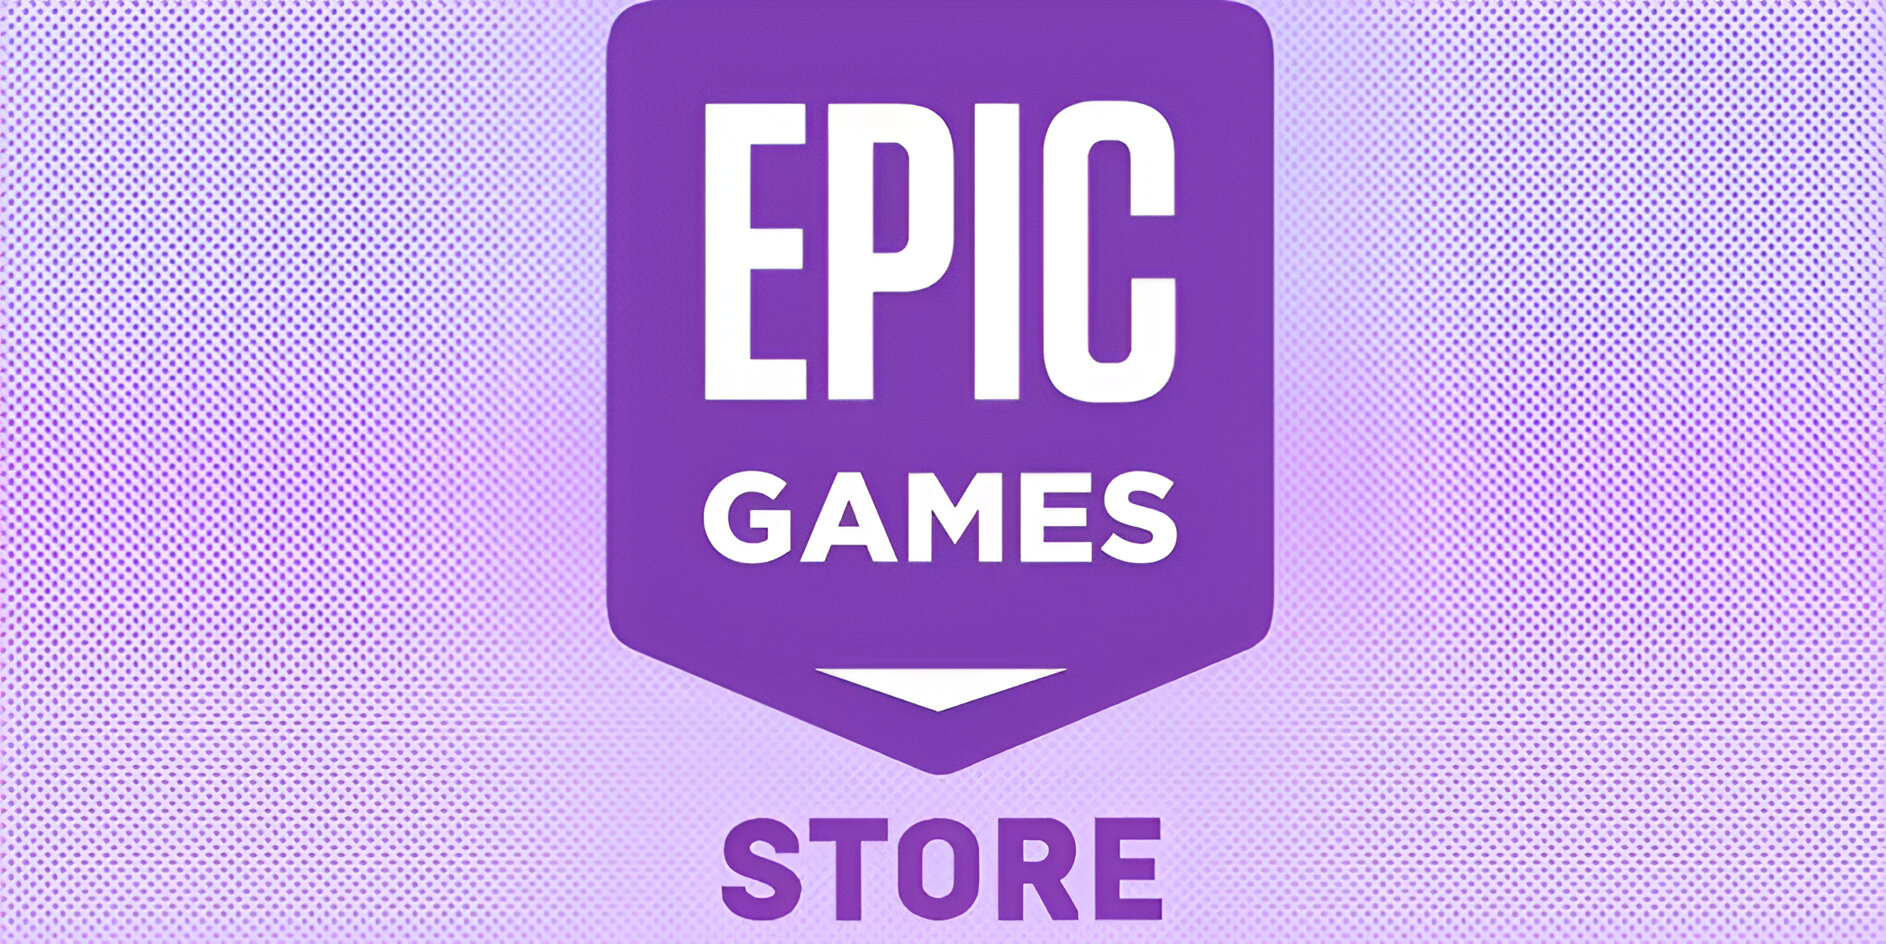 Rò rỉ những tựa game mà Epic Games sẽ tặng vào tháng 4